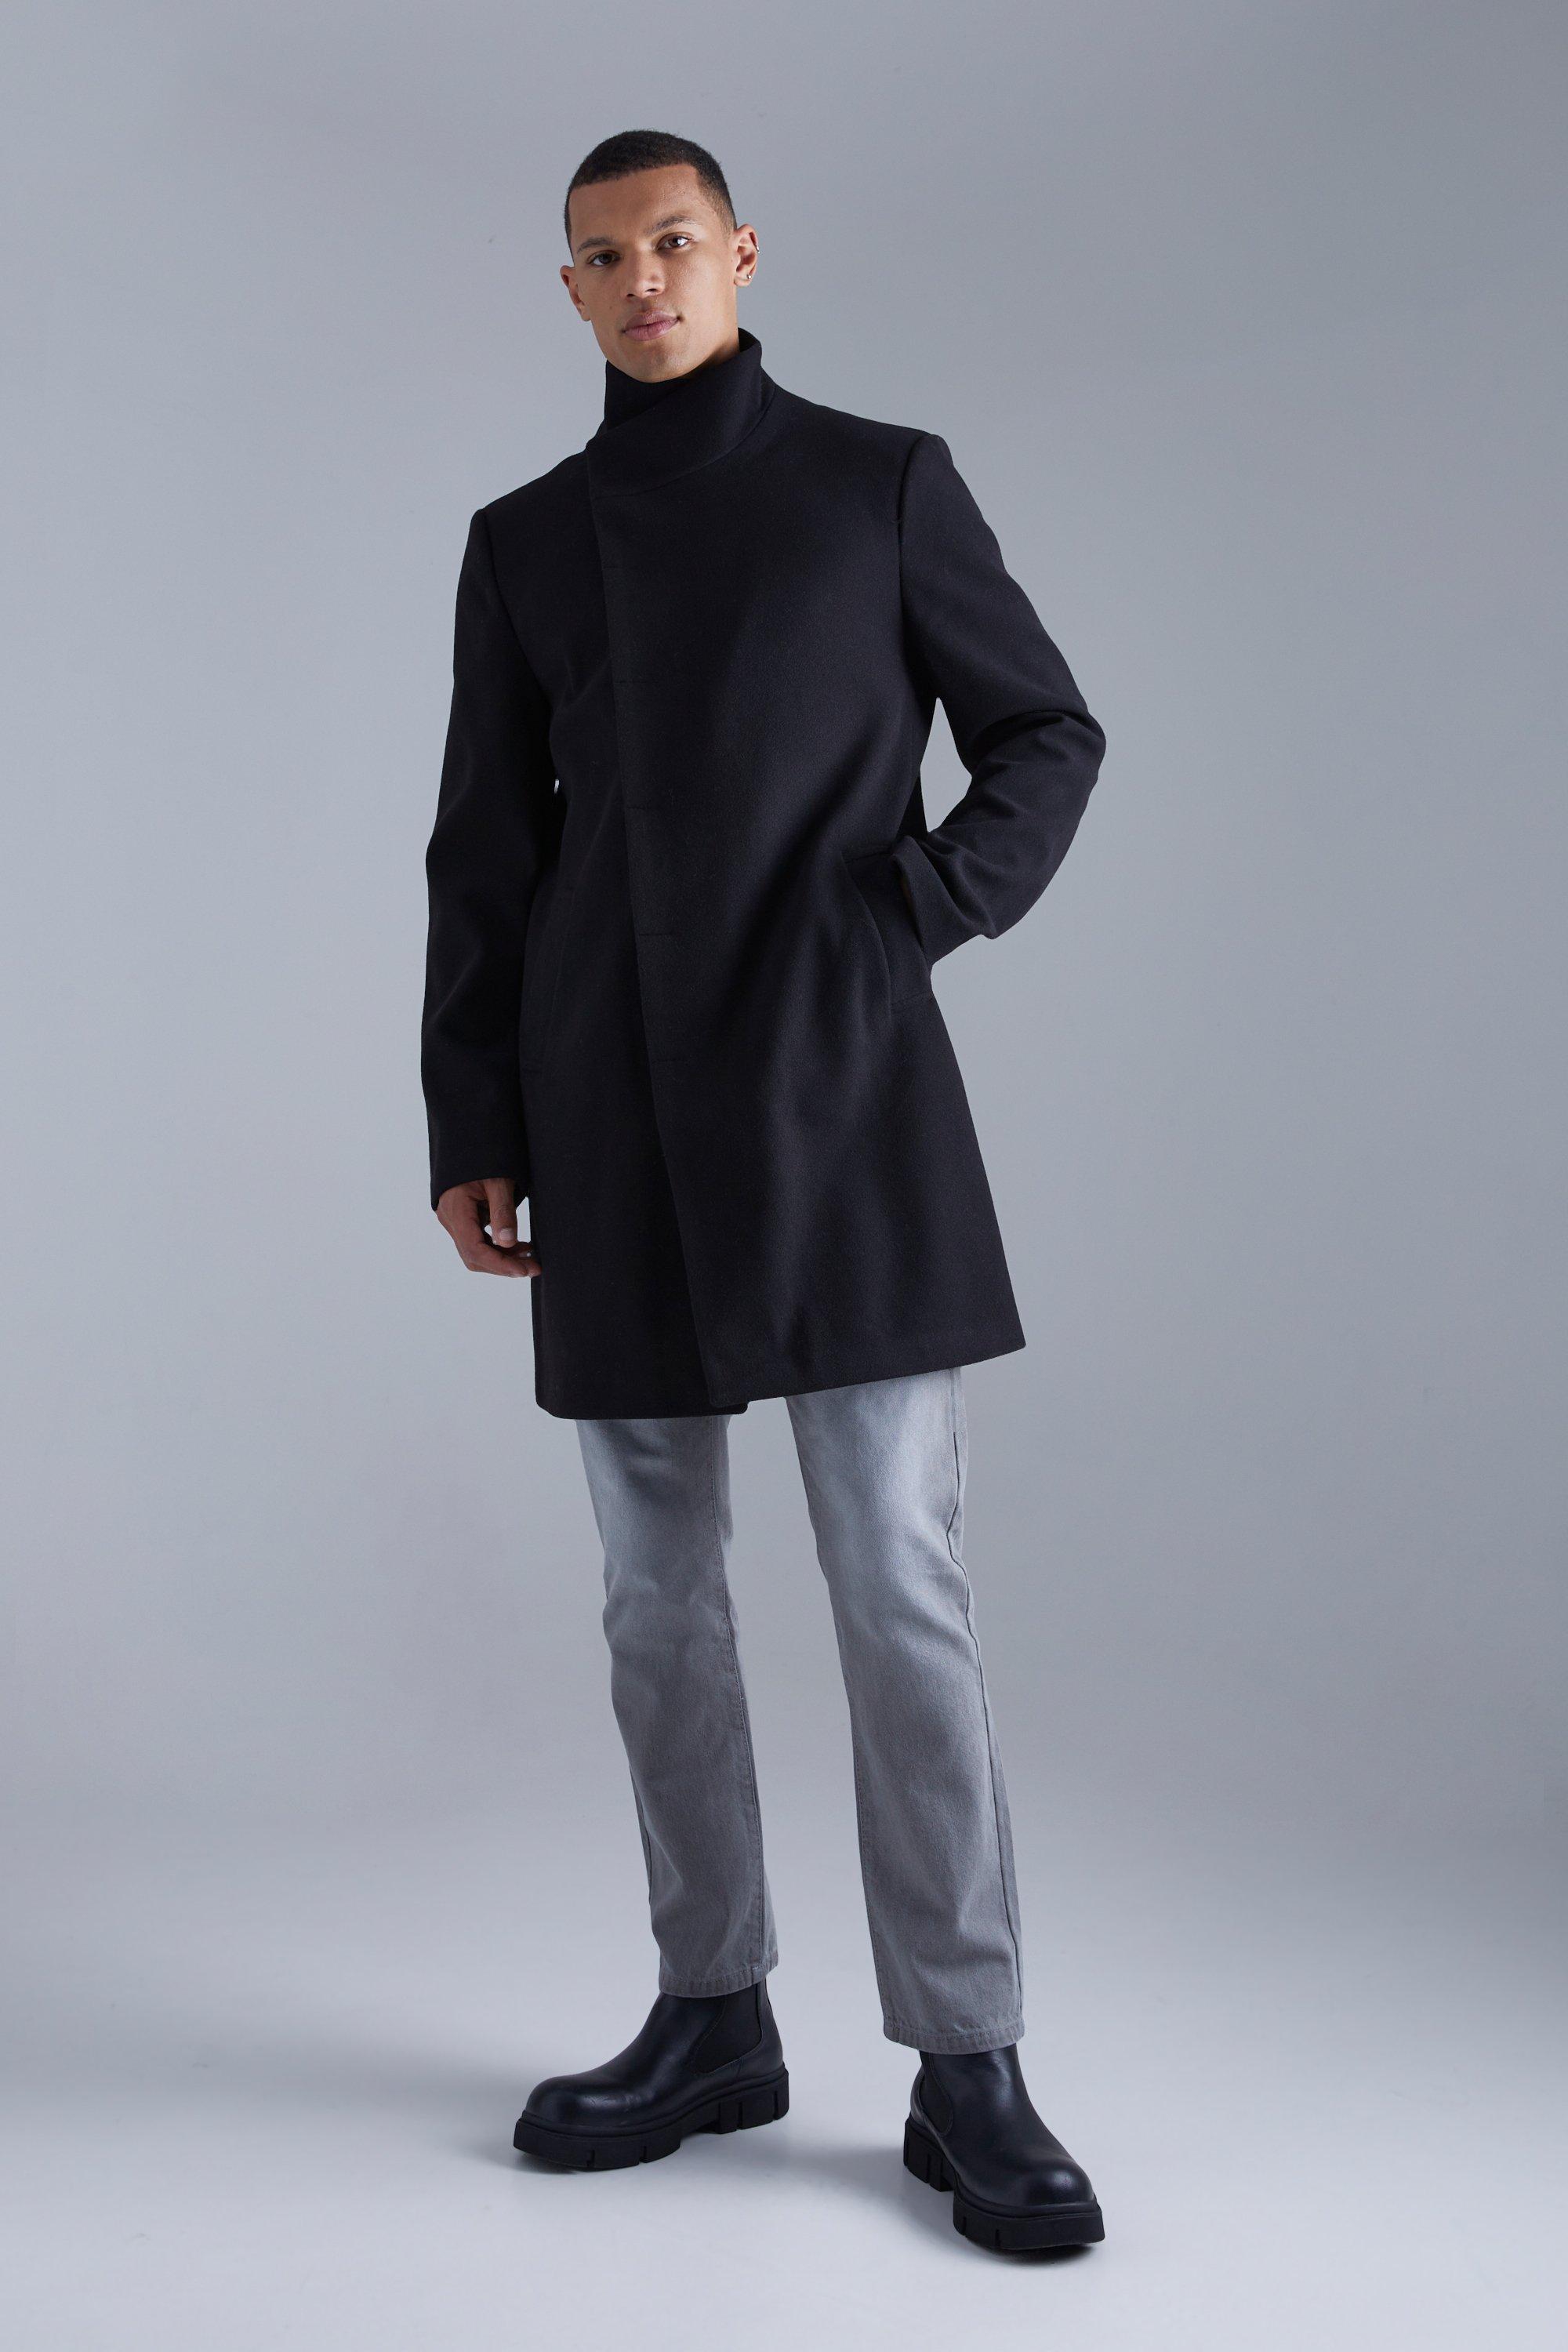 tall - manteau long effet laine à col montant homme - noir - xxl, noir